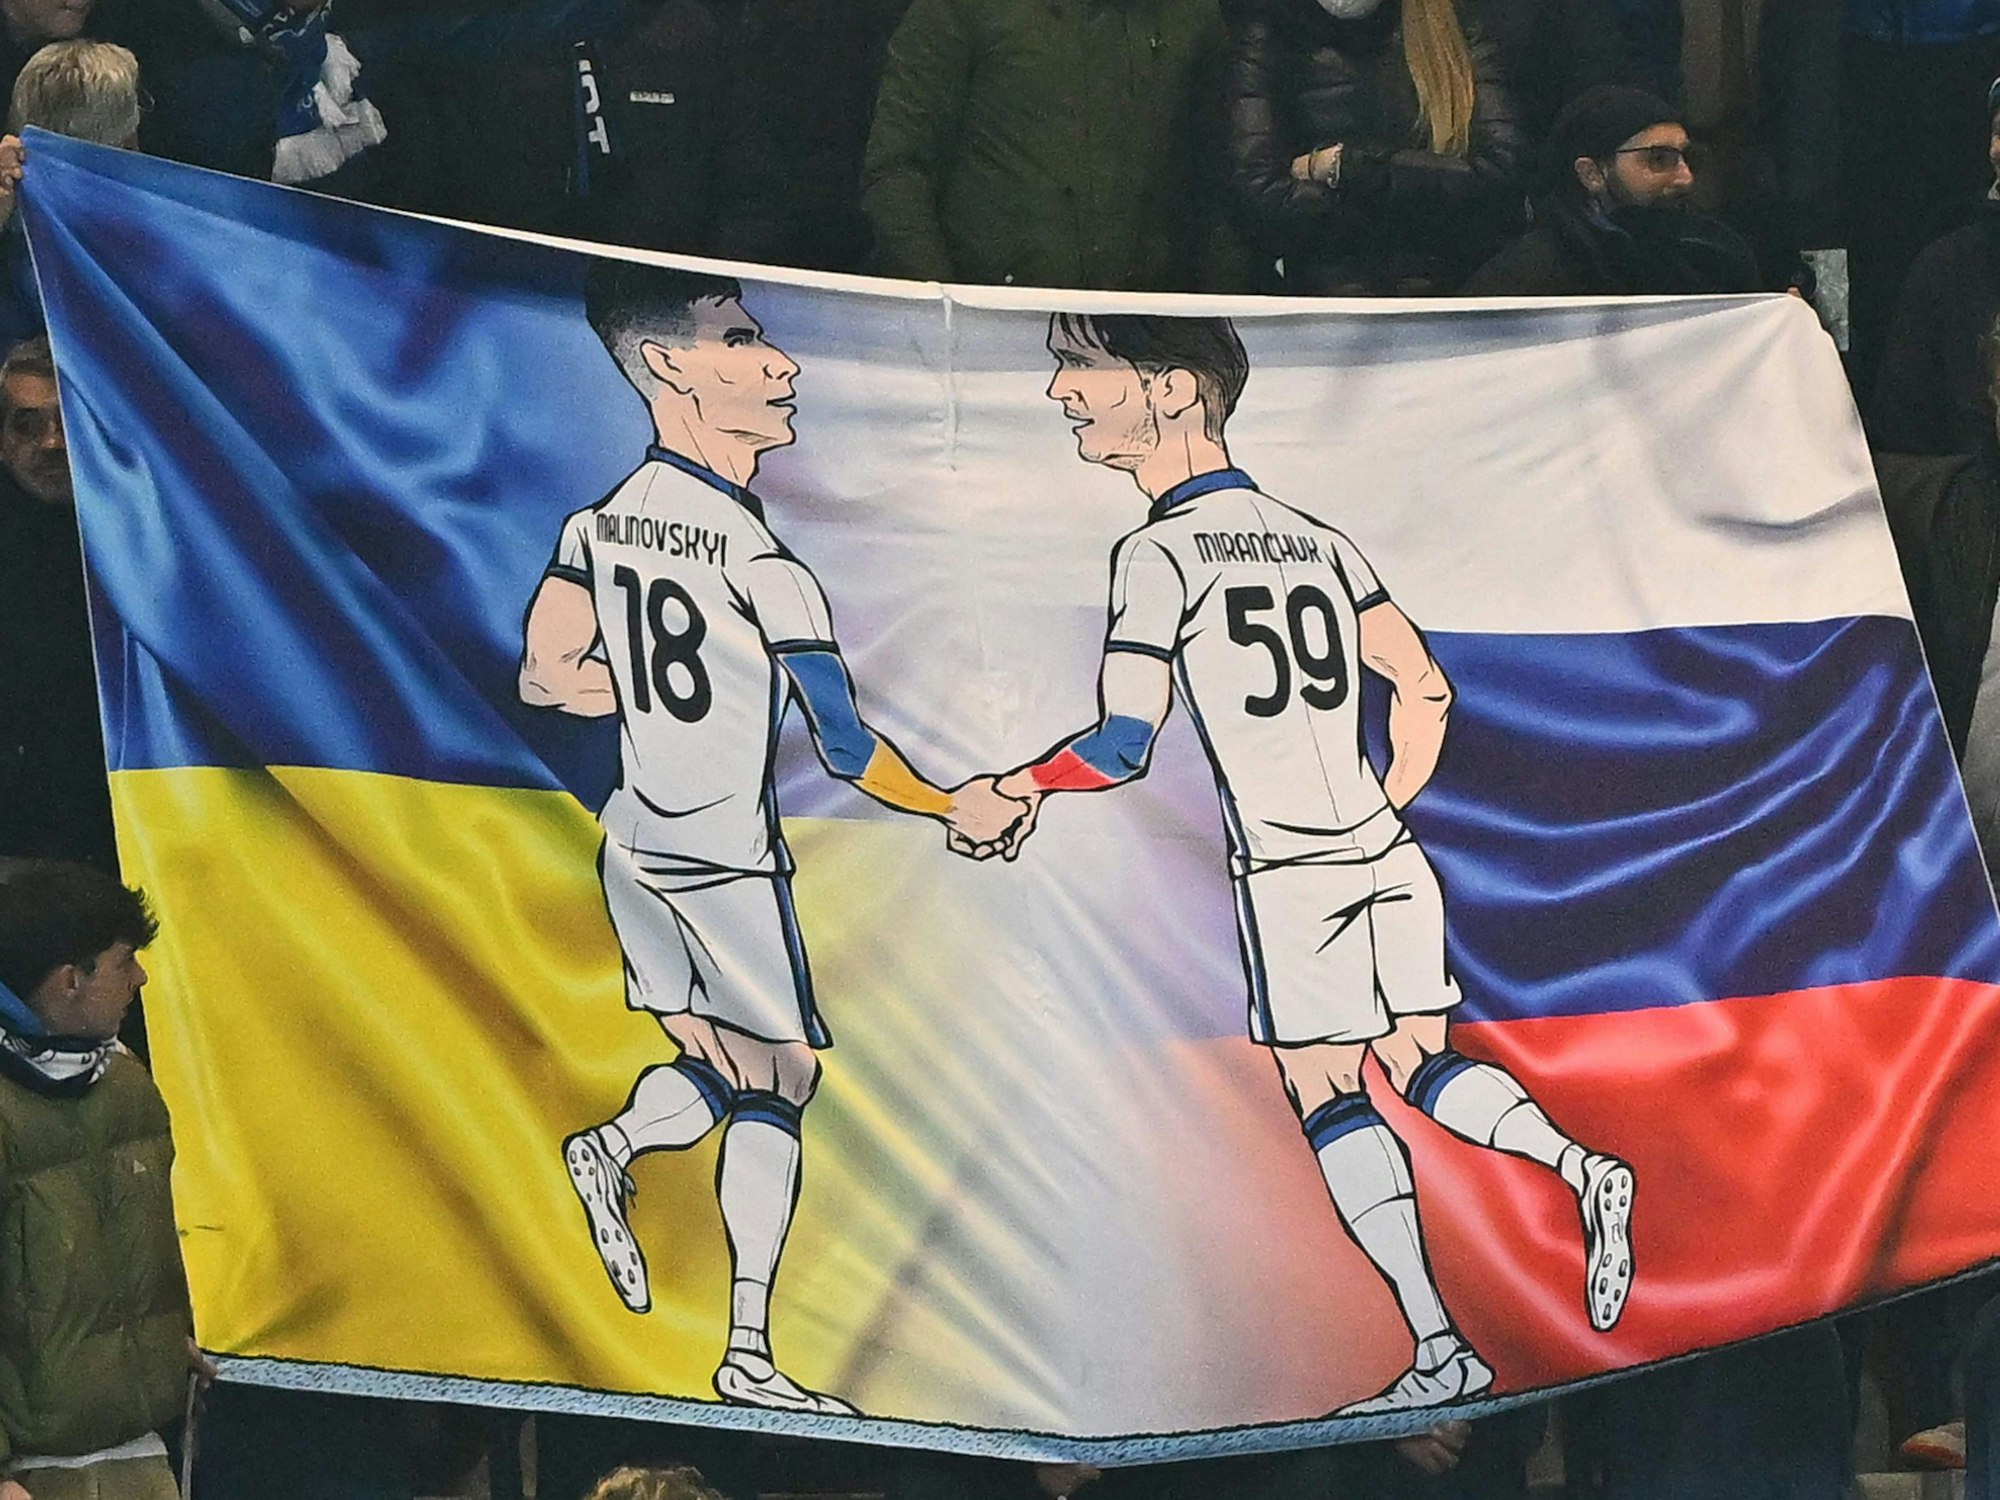 Zeichnungen der Atalanta-Profis Ruslan Malinowskyi und Alexej Mirantschuk beim Europa-League-Spiel zwischen Bergamo und Bayer Leverkusen. Im Hintergrund des Banners sind die Landesflaggen der Ukraine und Russlands zu sehen.